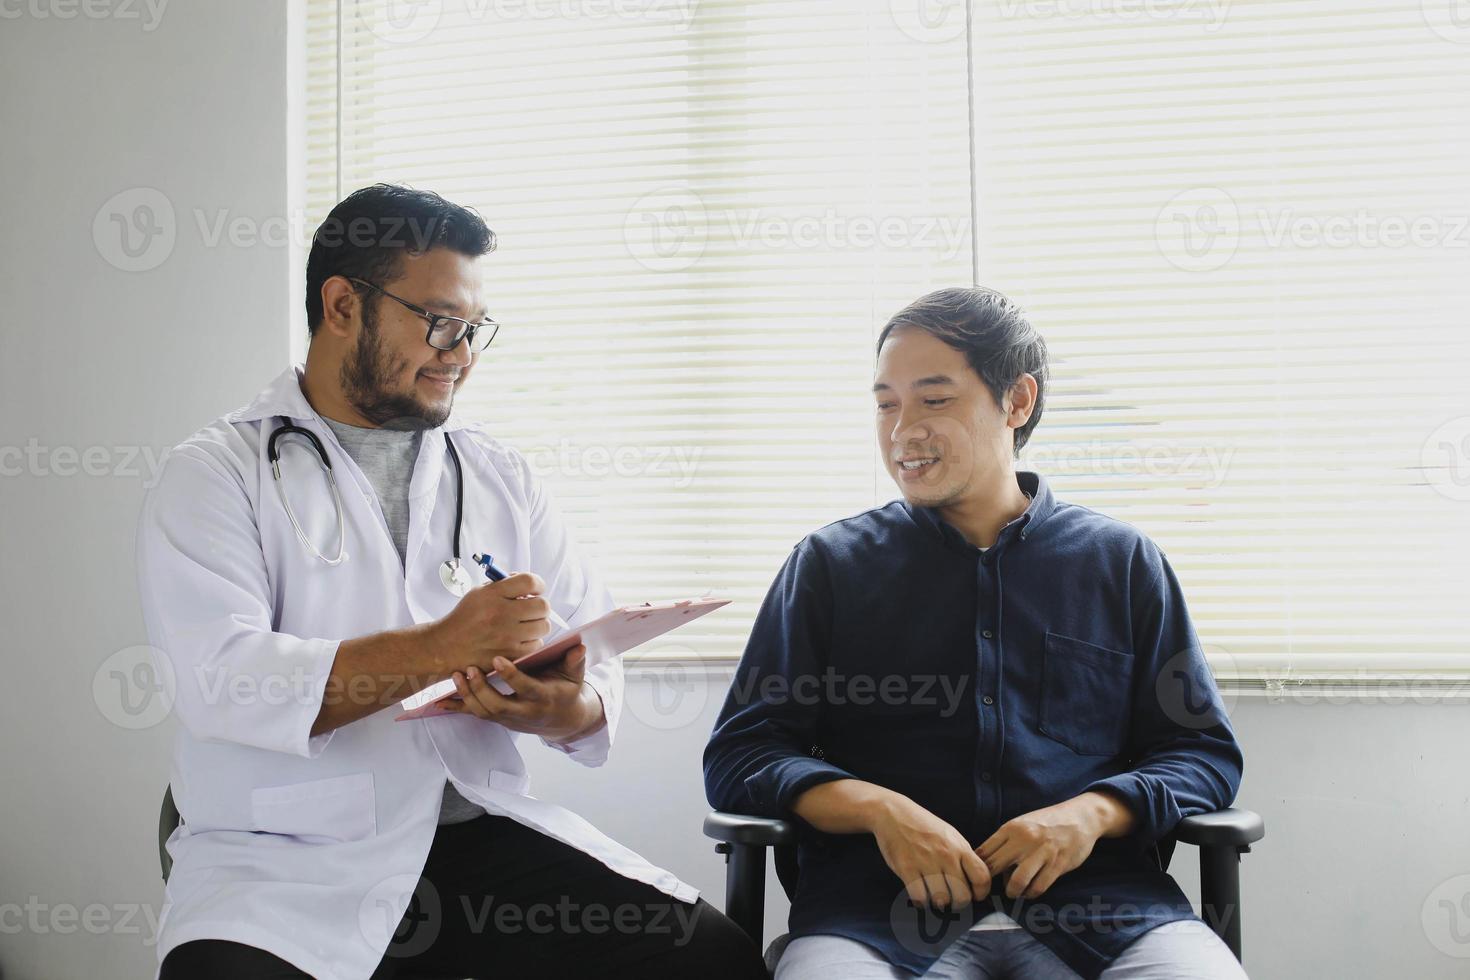 vrolijke arts en patiënt tijdens het nemen van het medisch dossier van de patiënt foto